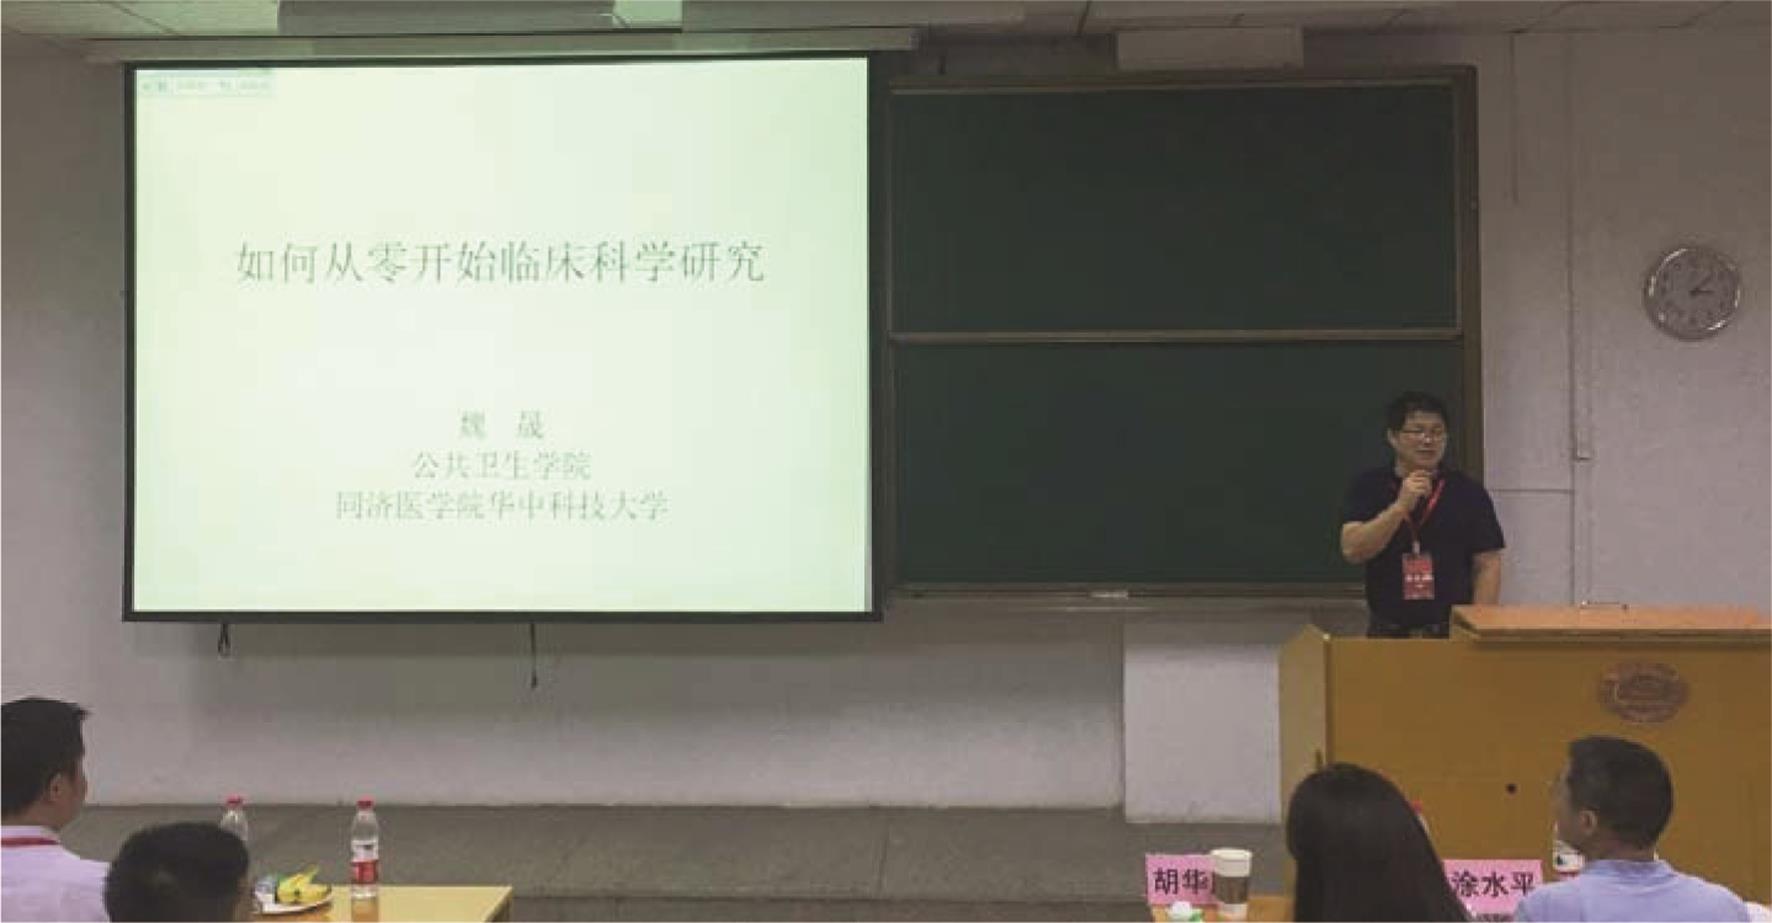 华中科技大学同济公共卫生学院流行病与卫生统计学系主任魏晟授课。